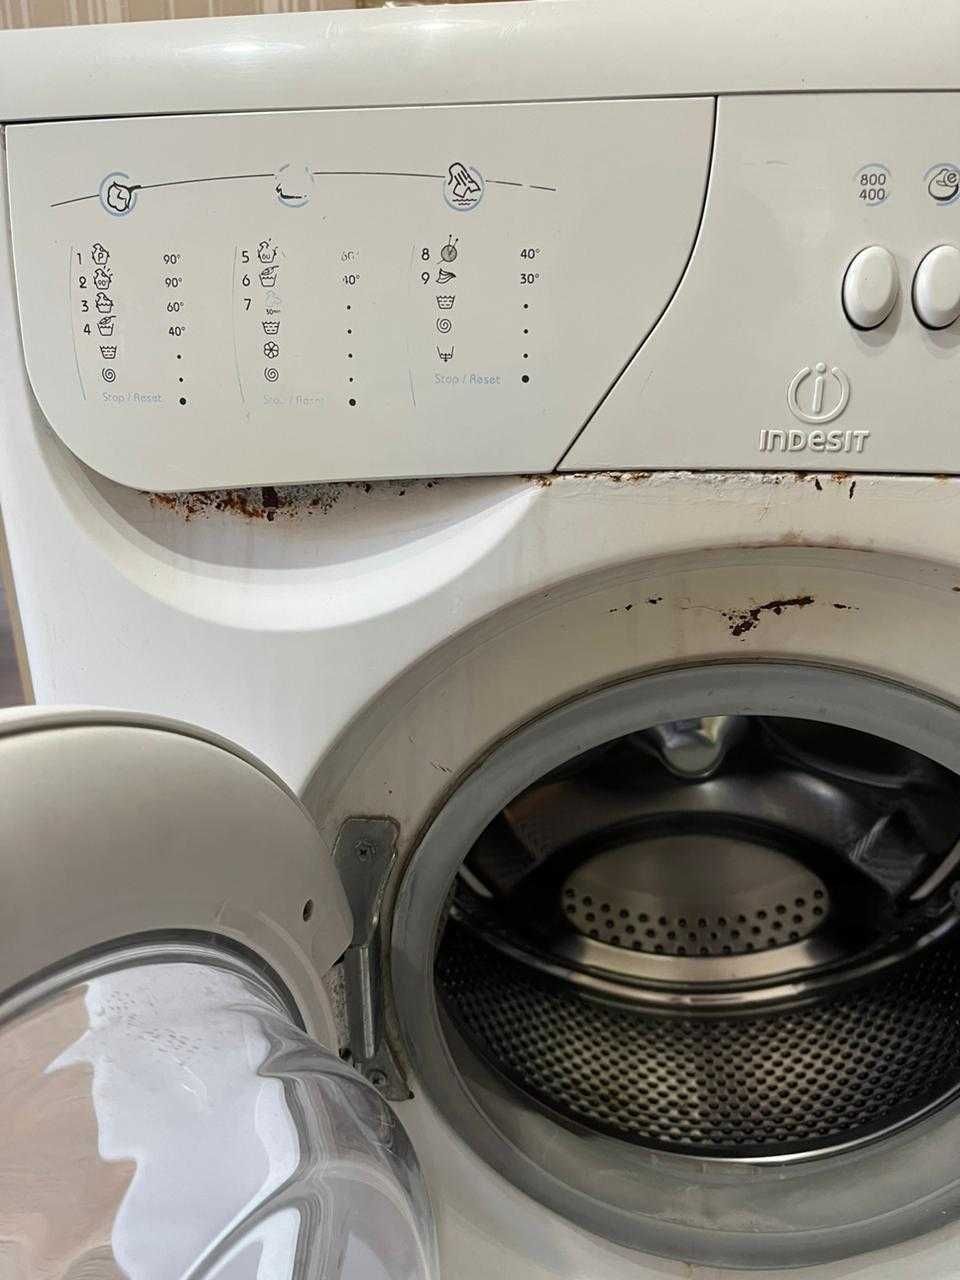 Продам стиральную машину ИНДЕЗИТ, подшипники менять надо